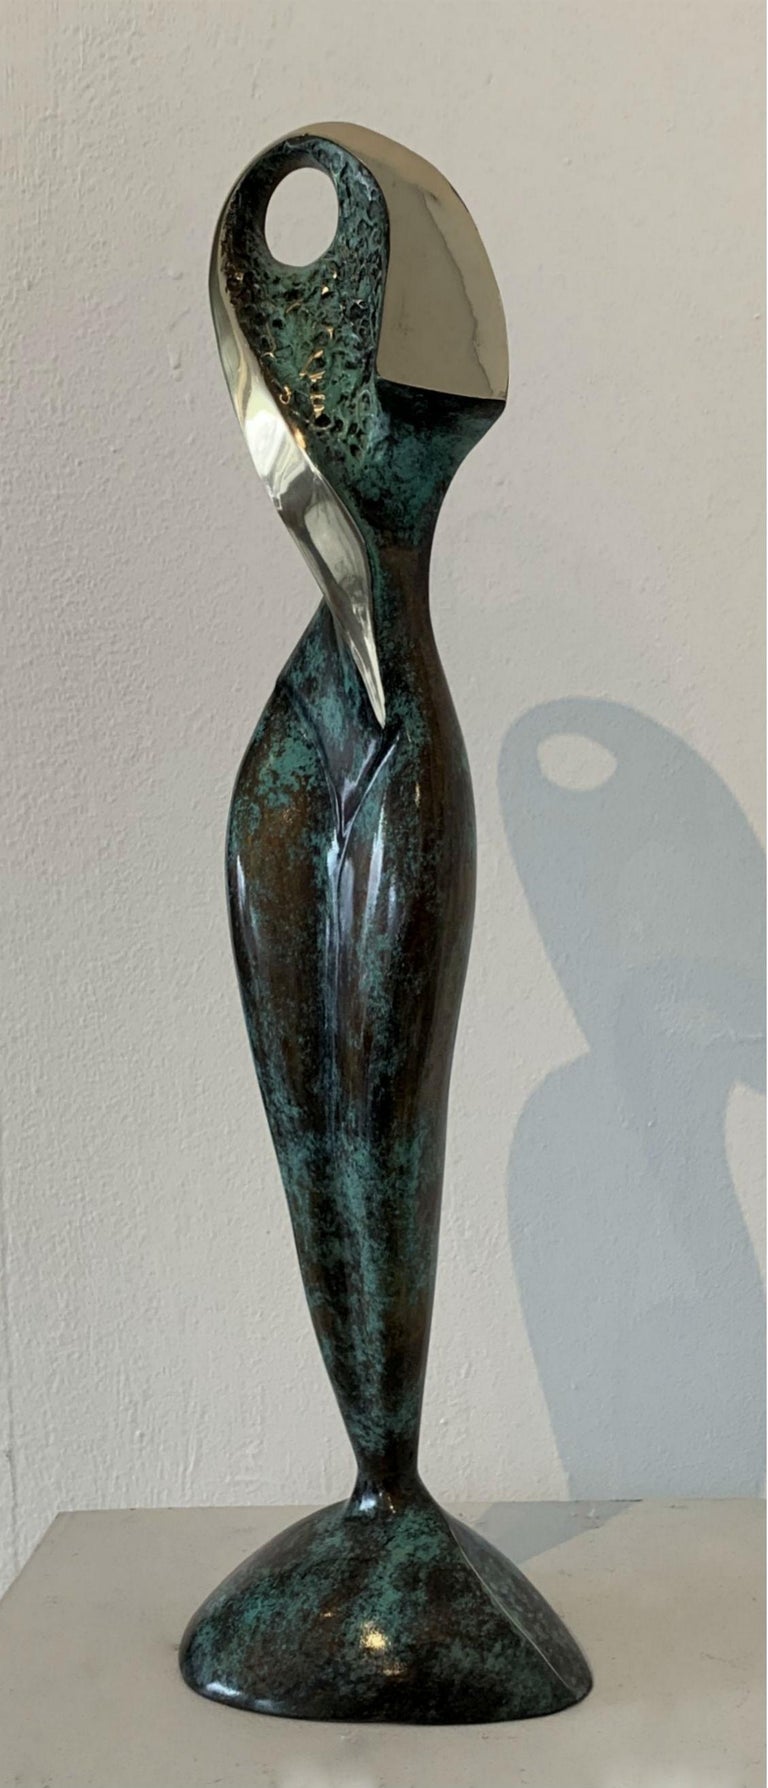 Stanisław Wysocki Muse XXI century Contemporary bronze